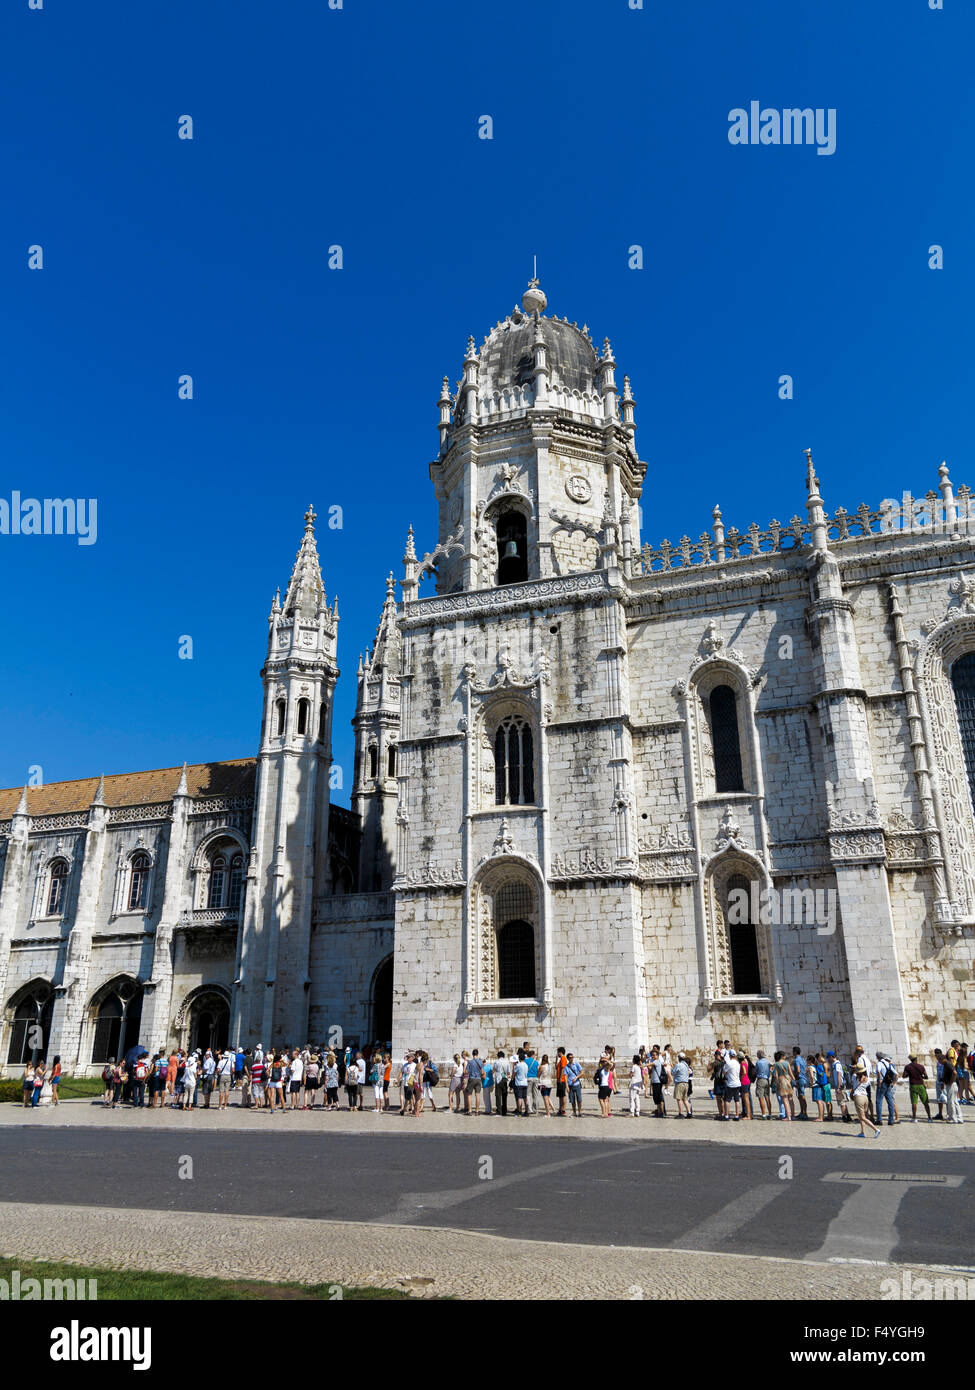 Les touristes attendent en ligne pour visiter le Jernimos Monastère et église de Santa Maria de Belém Site du patrimoine mondial de l'Lisbonne Portugal Banque D'Images